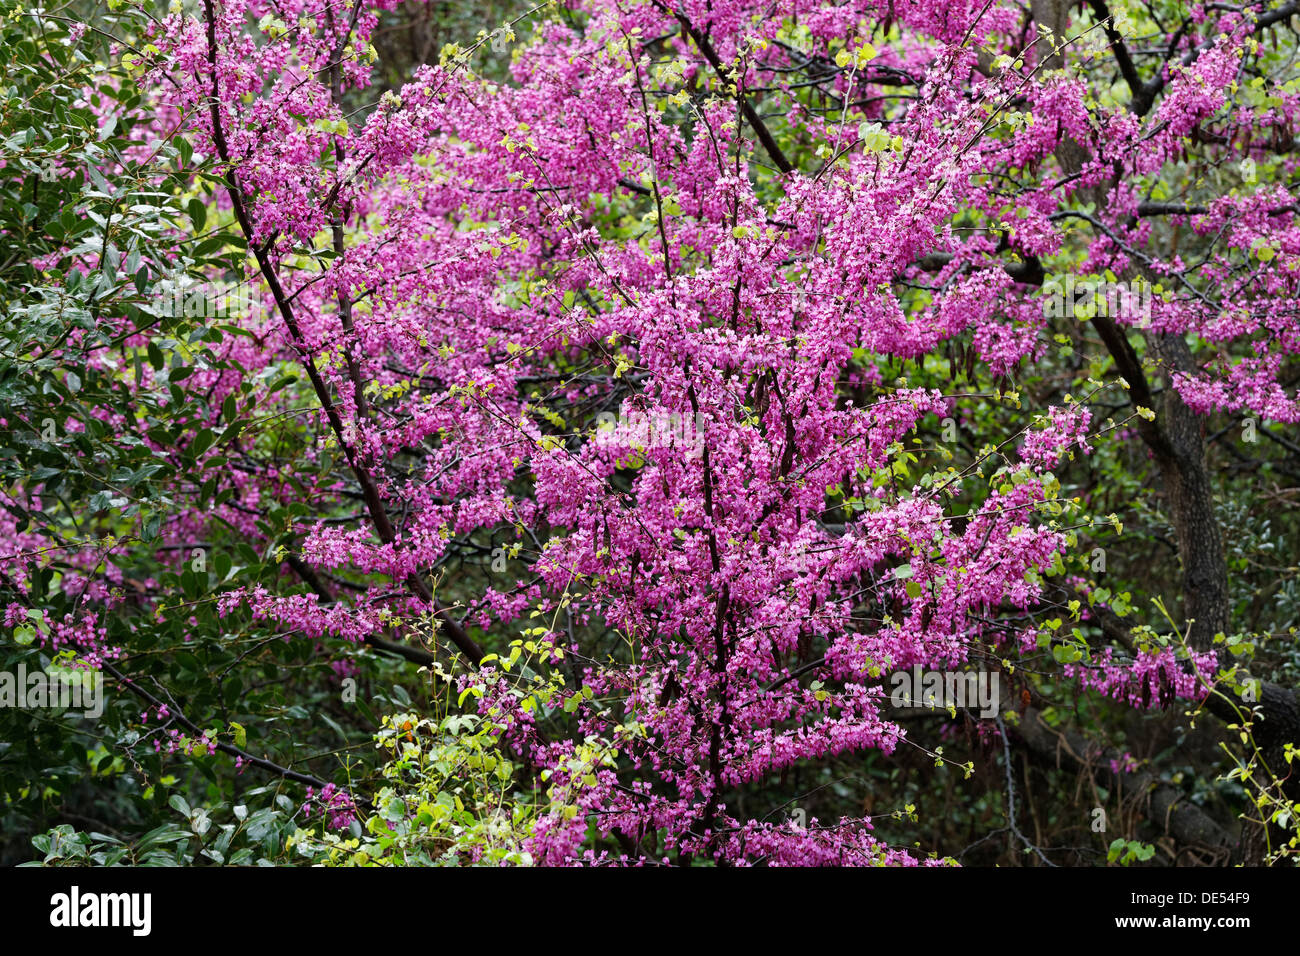 La floraison (arbre de Judée, Cercis siliquastrum), Parc National de Dilek, Kusadasi, Aydin province, région de l'Egée, la Turquie Banque D'Images